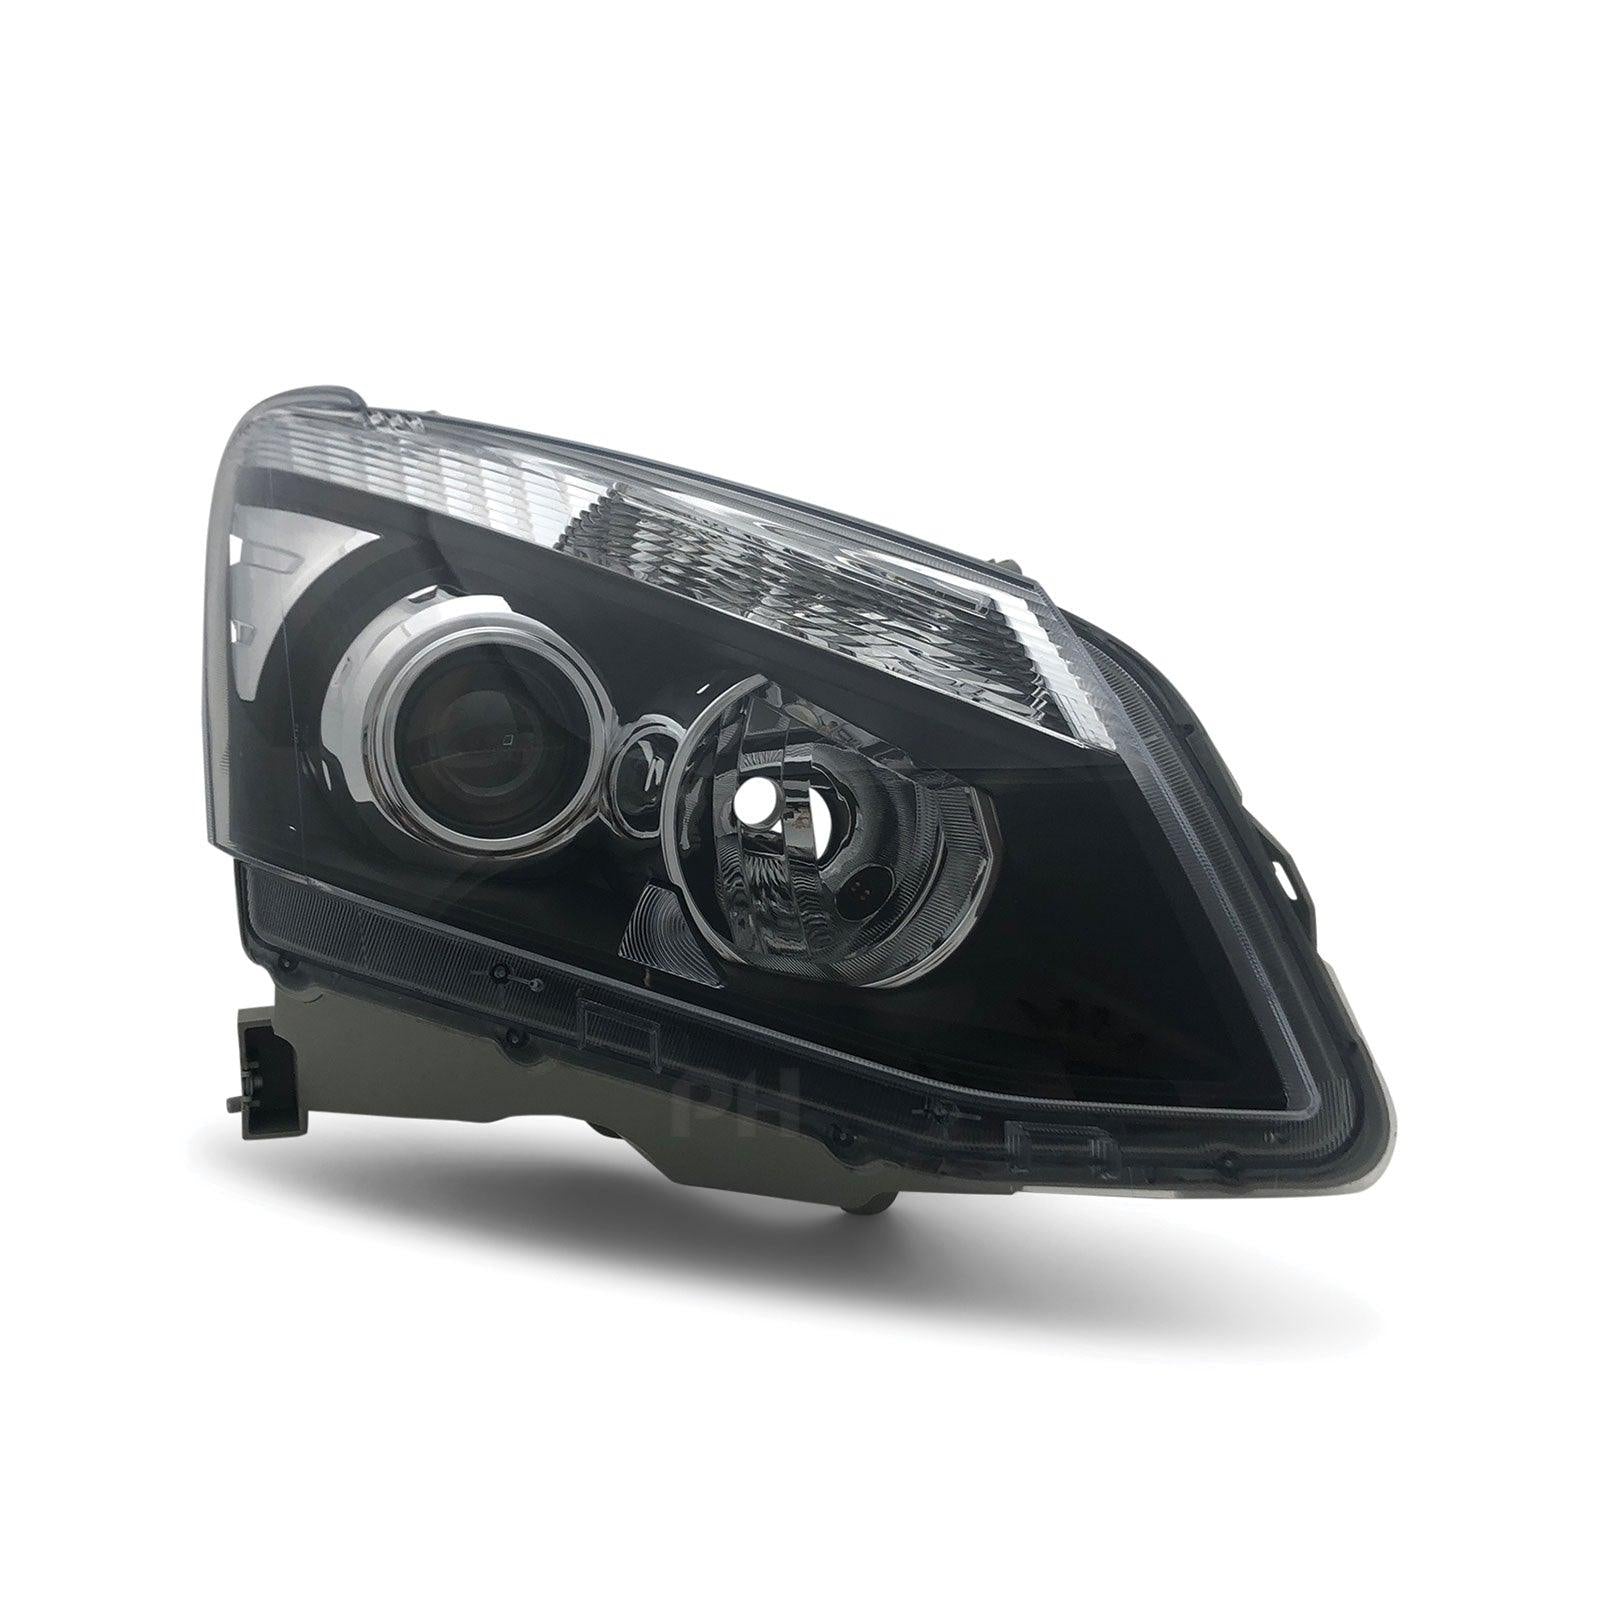 Headlight Black Projector RIGHT Fits Isuzu DMAX Ute 2012 - 2016 D-MAX - 4X4OC™